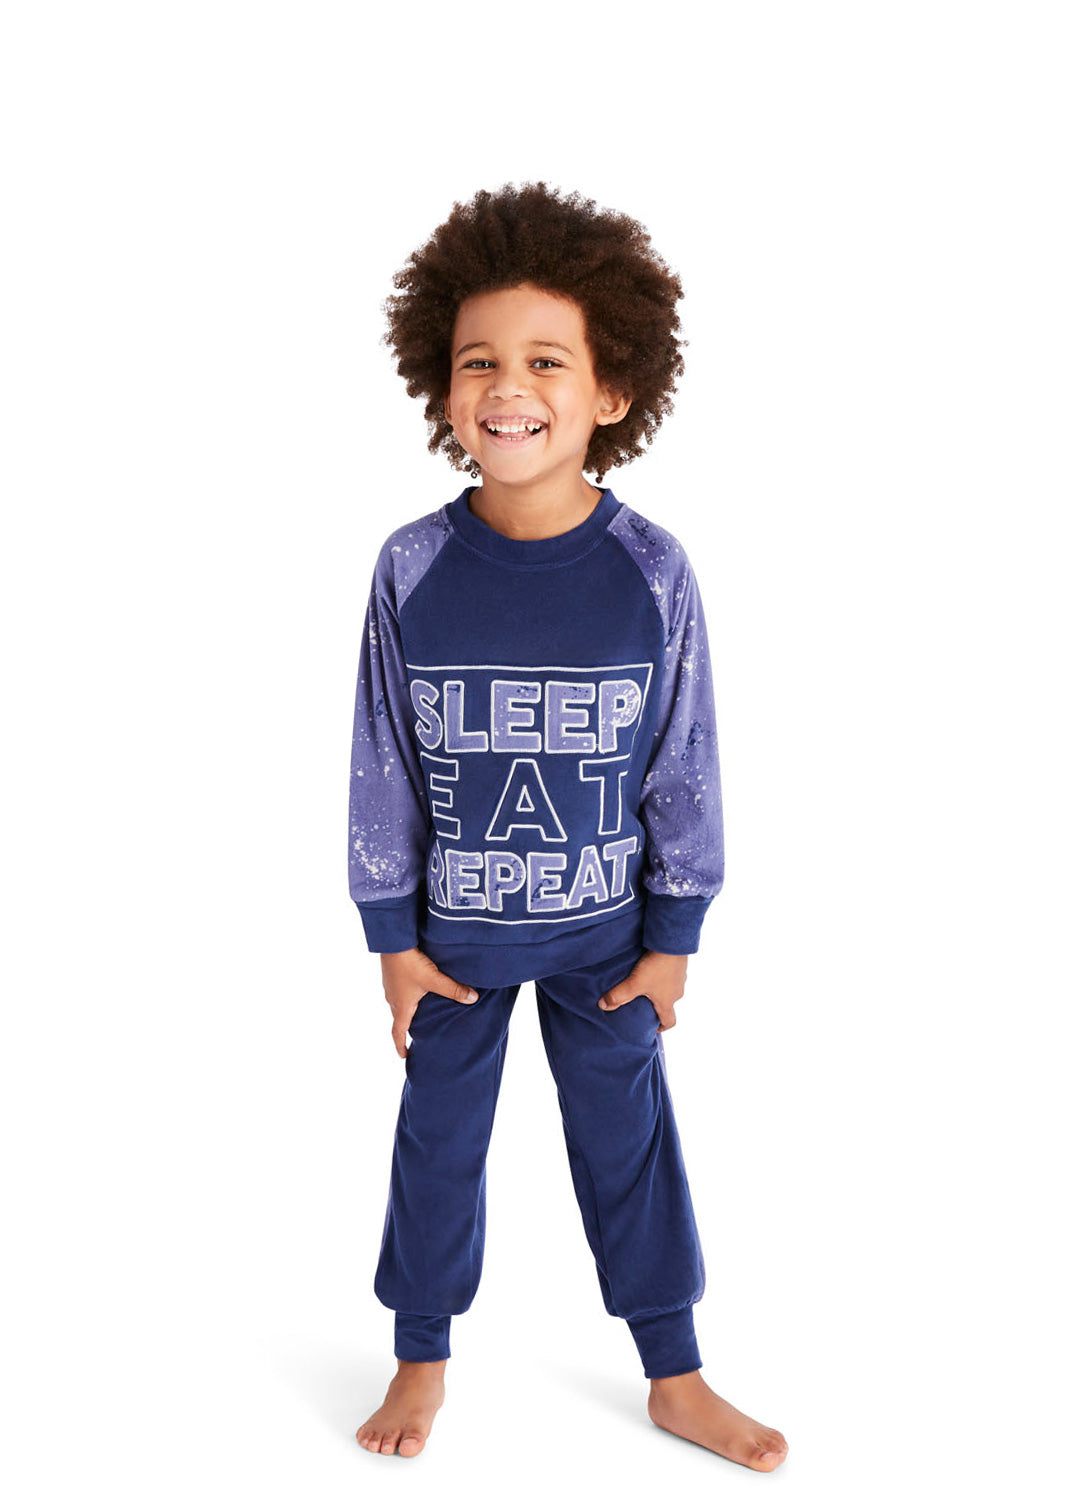 Little Boy wearing a Blue Splatter Pajama Set